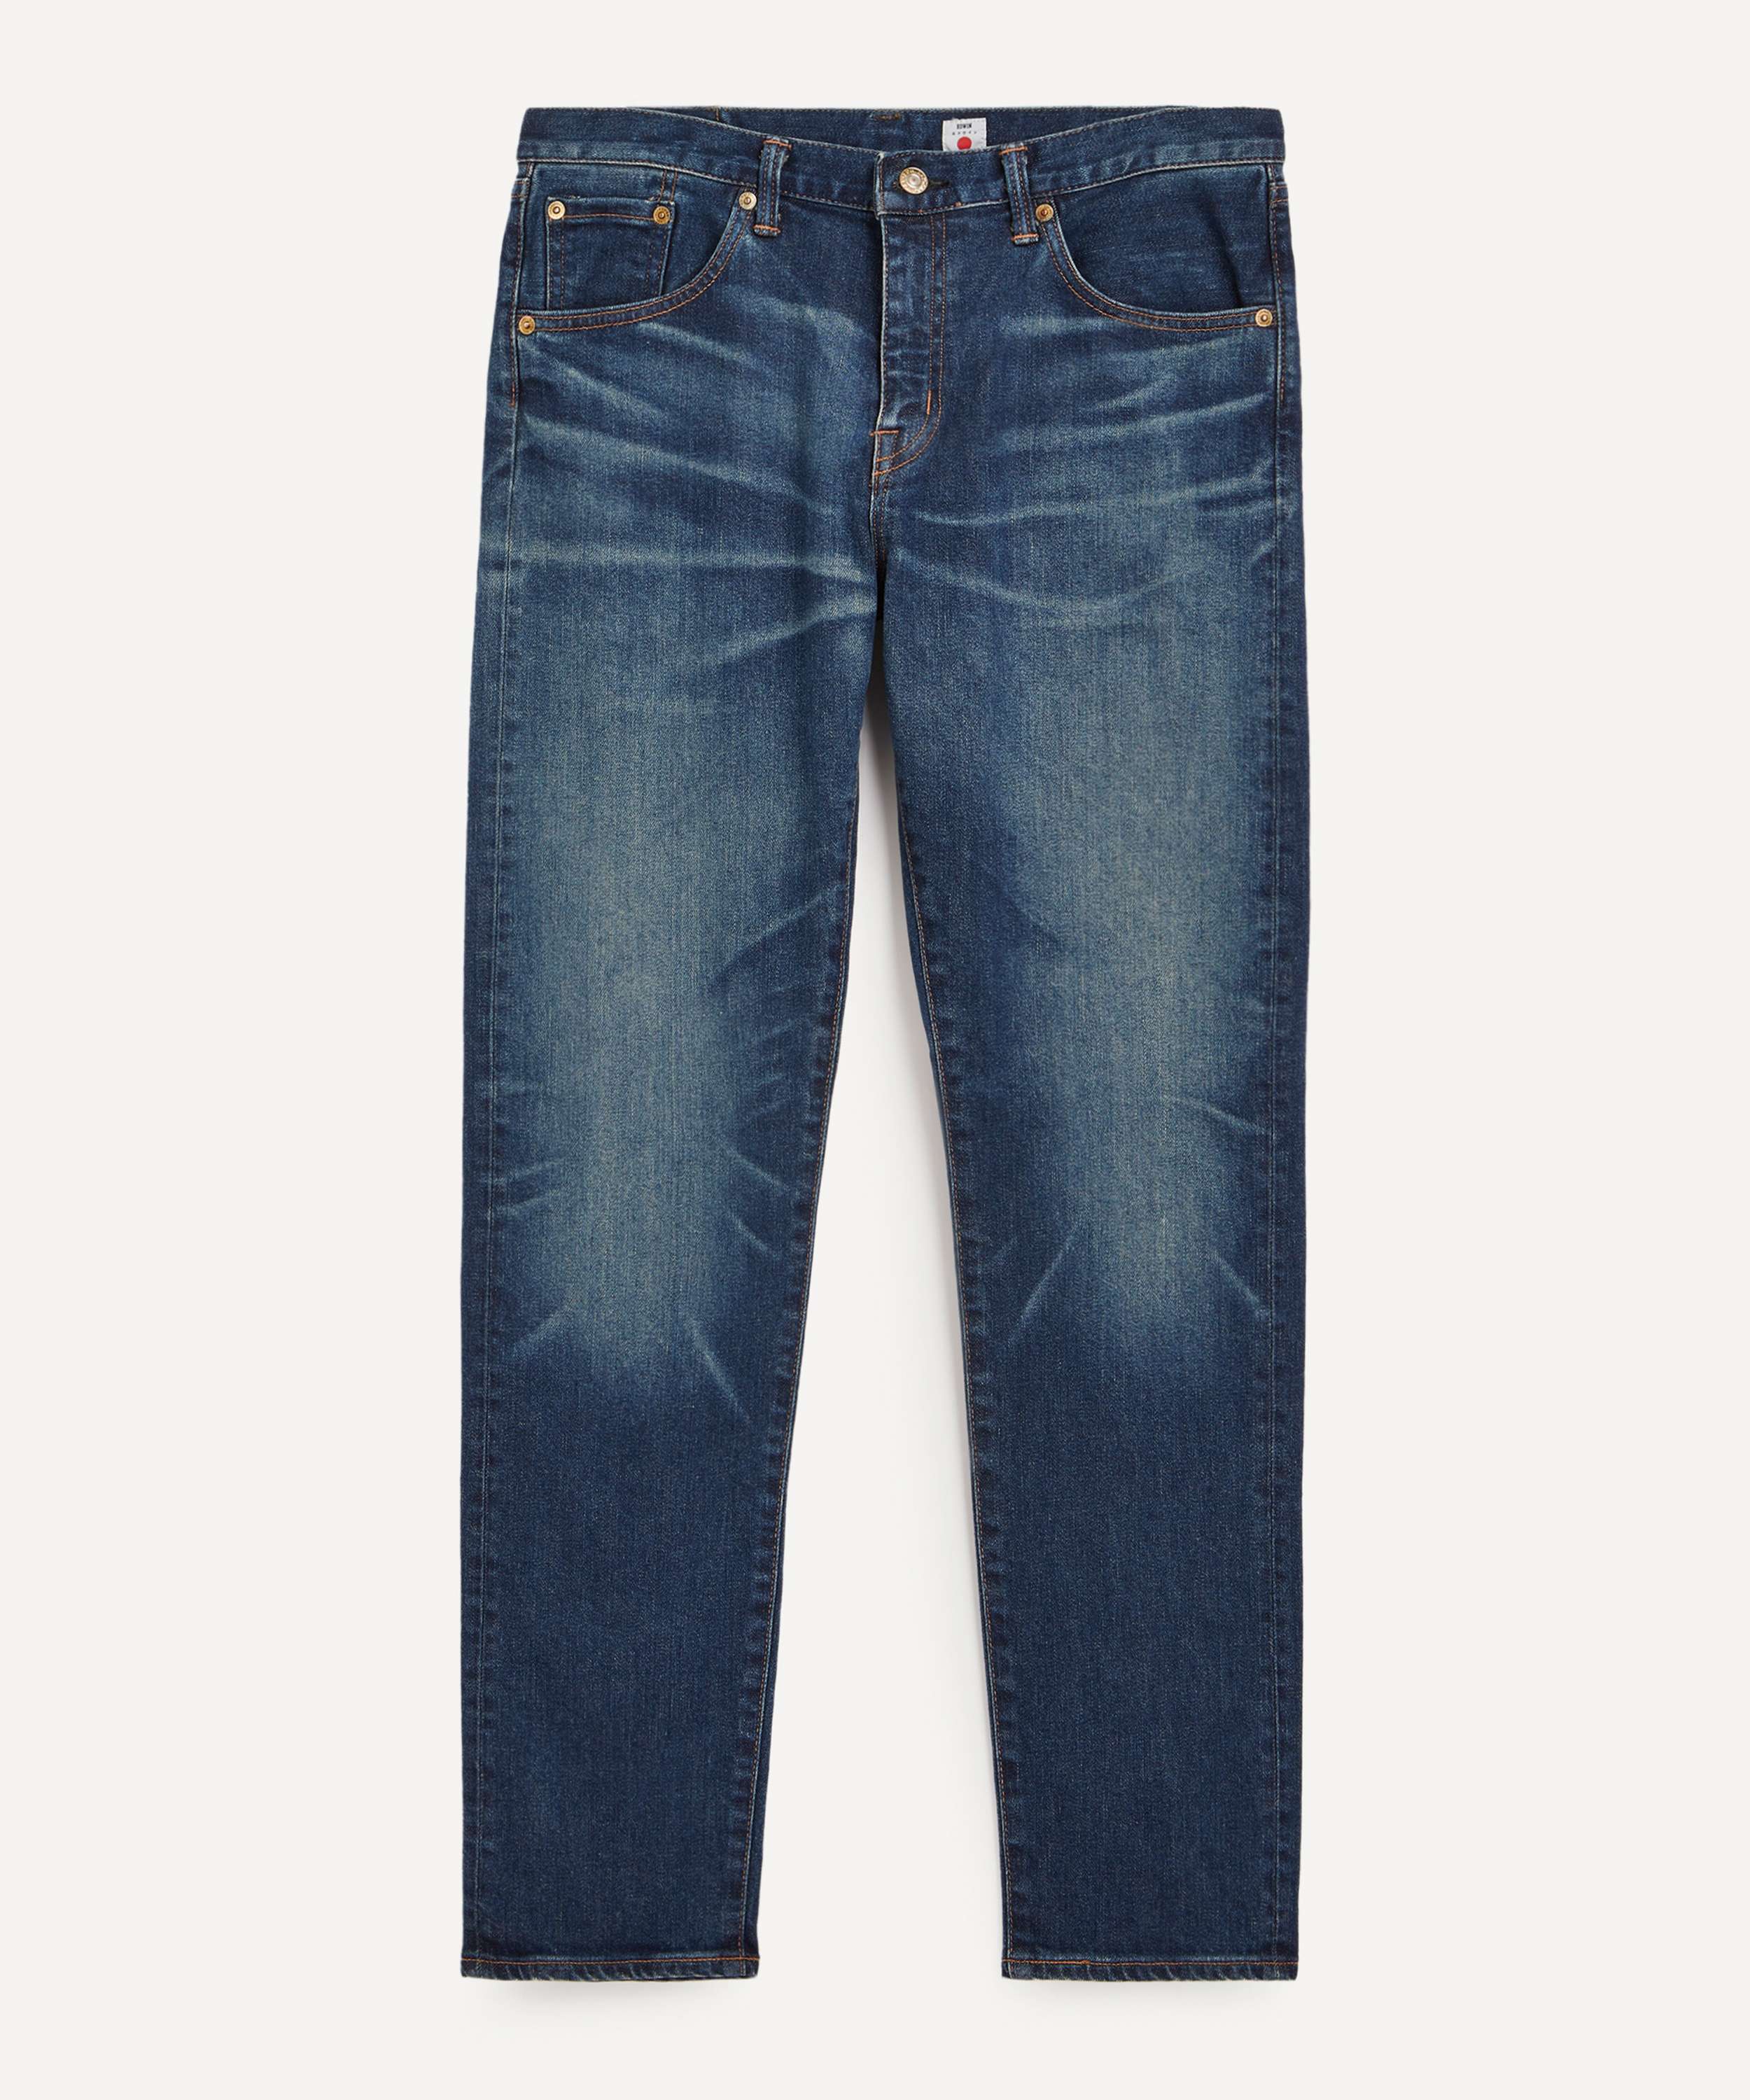 Pantalon Dril Slim Now Soun - Kenzo Jeans